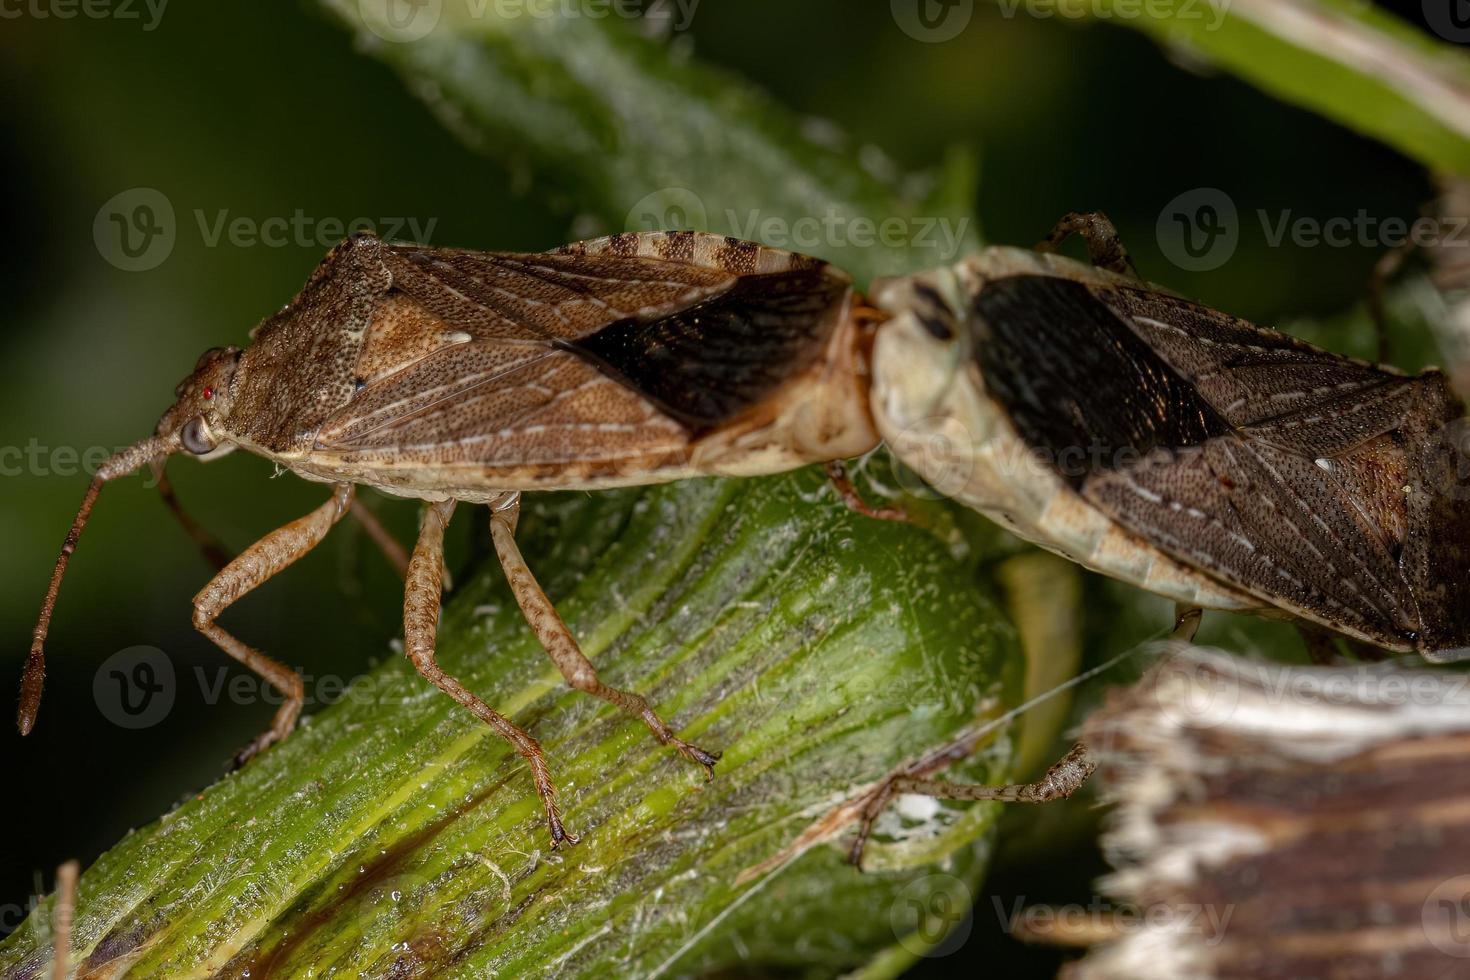 acoplamento de insetos pentatomomorfos adultos foto